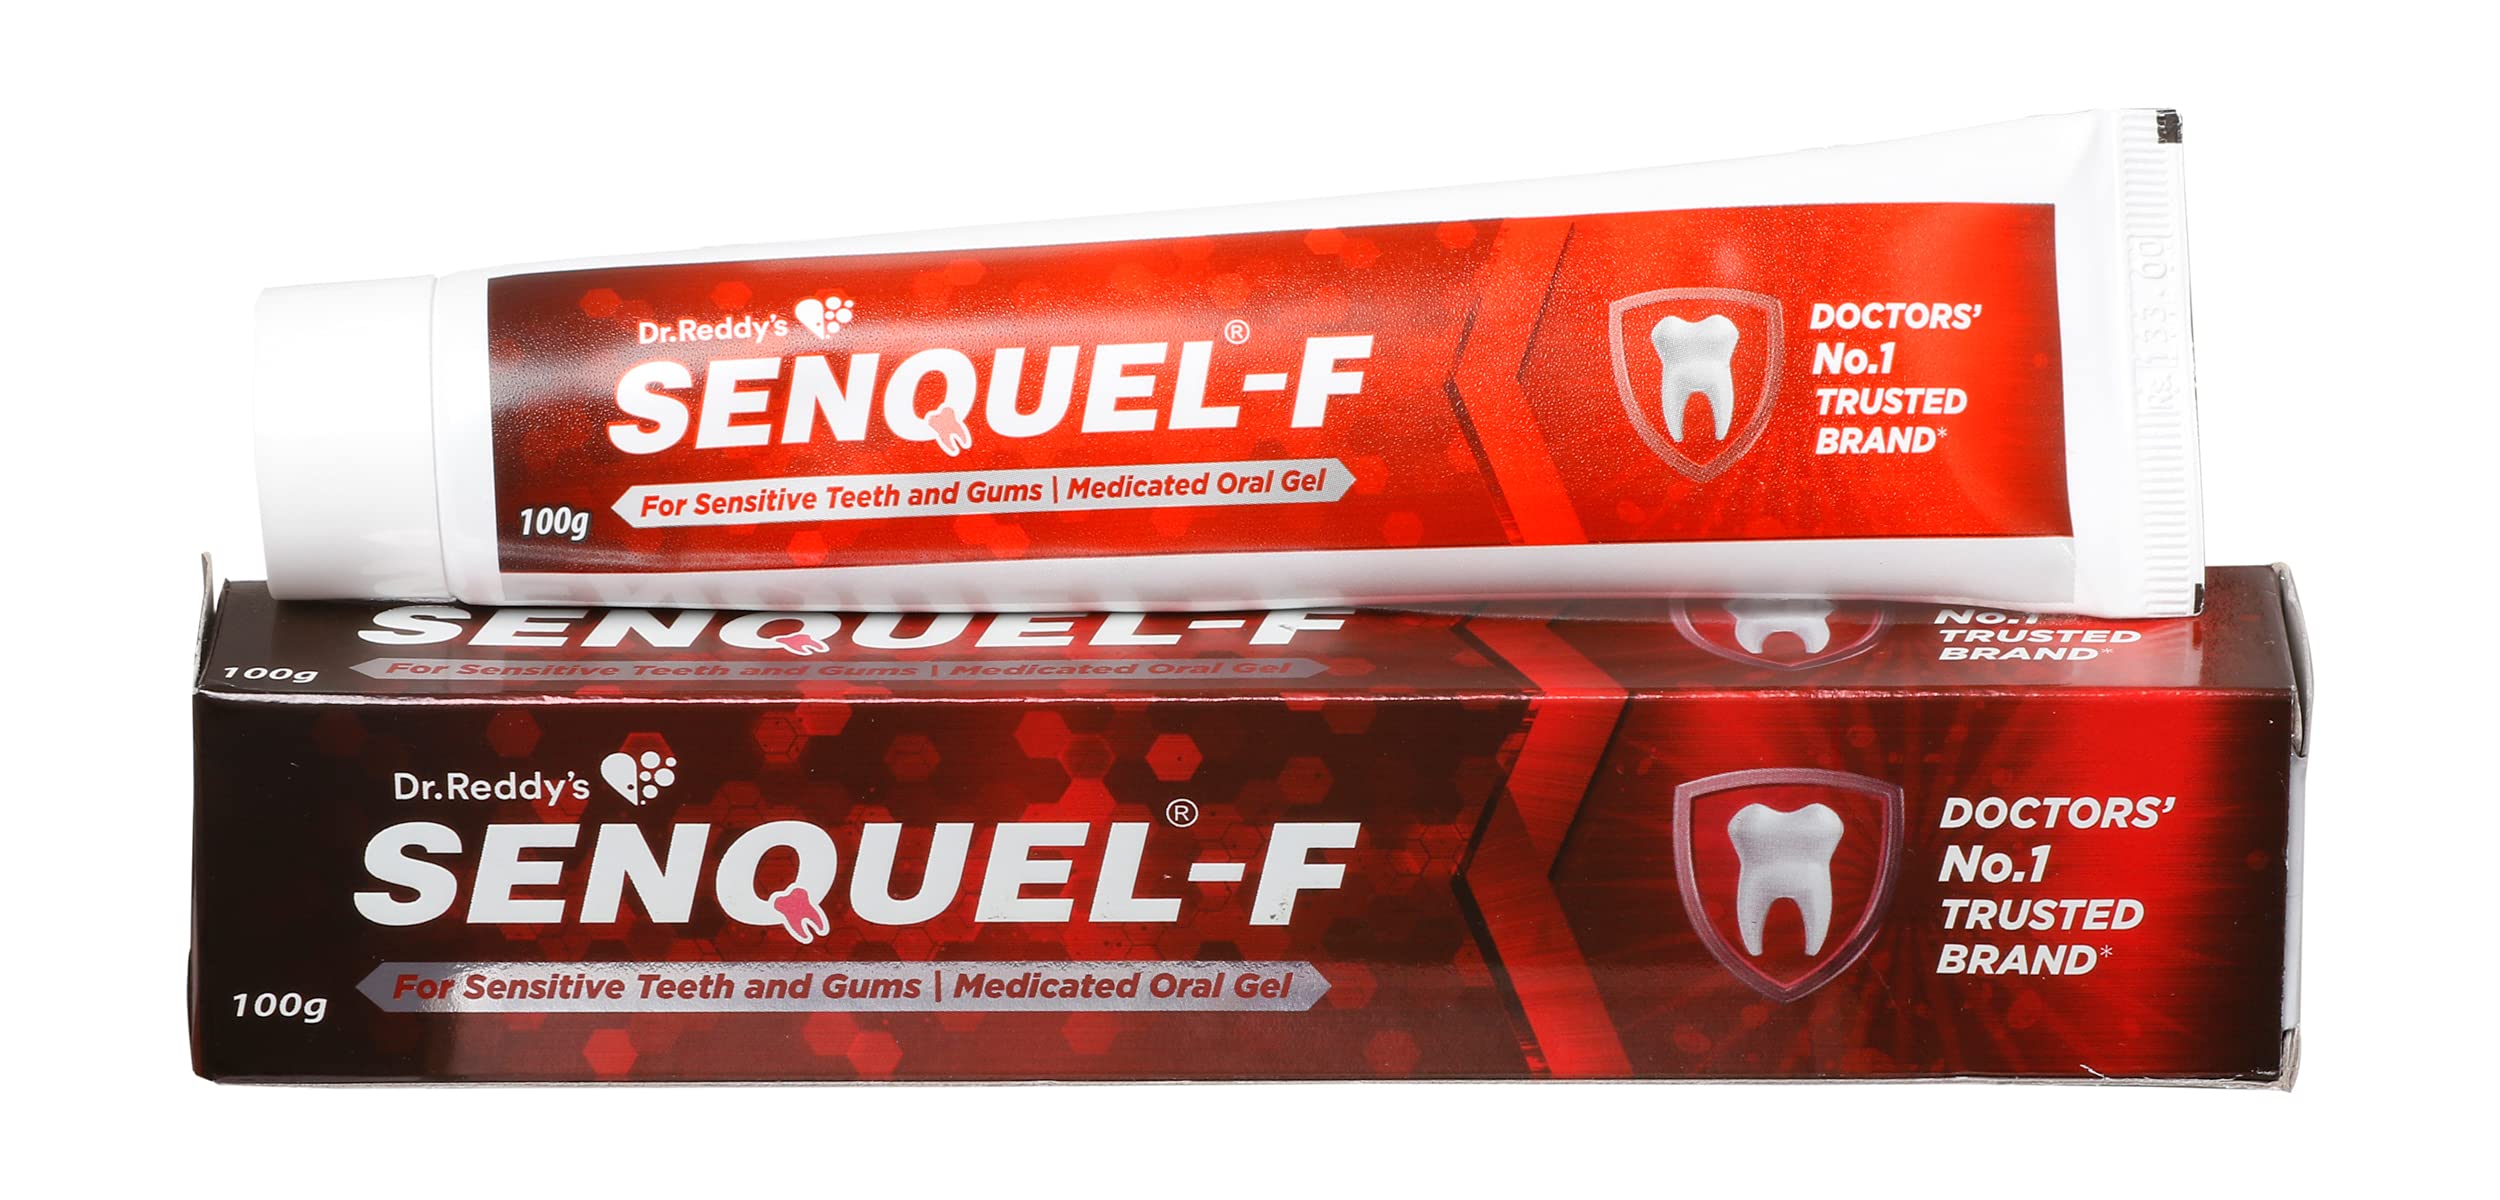 SENQUEL-F Gel, Dr. Reddy's (Гель СЕНКВЕЛ-Ф, для чувствительных зубов и десен), 100 г.